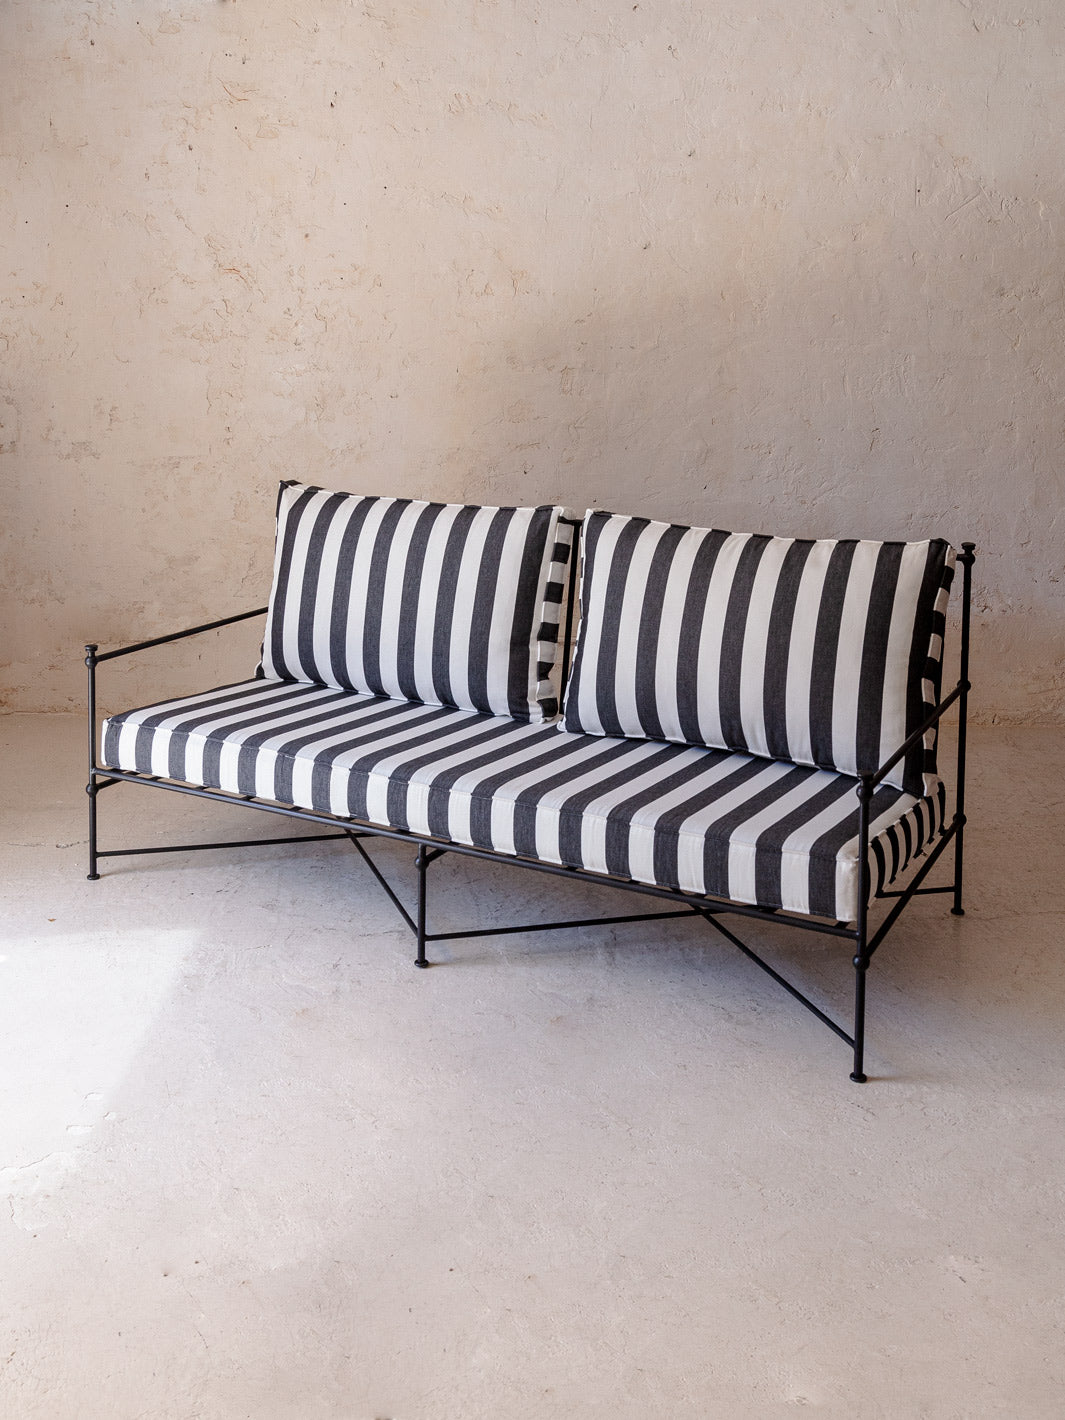 Black and white striped wrought iron sofa